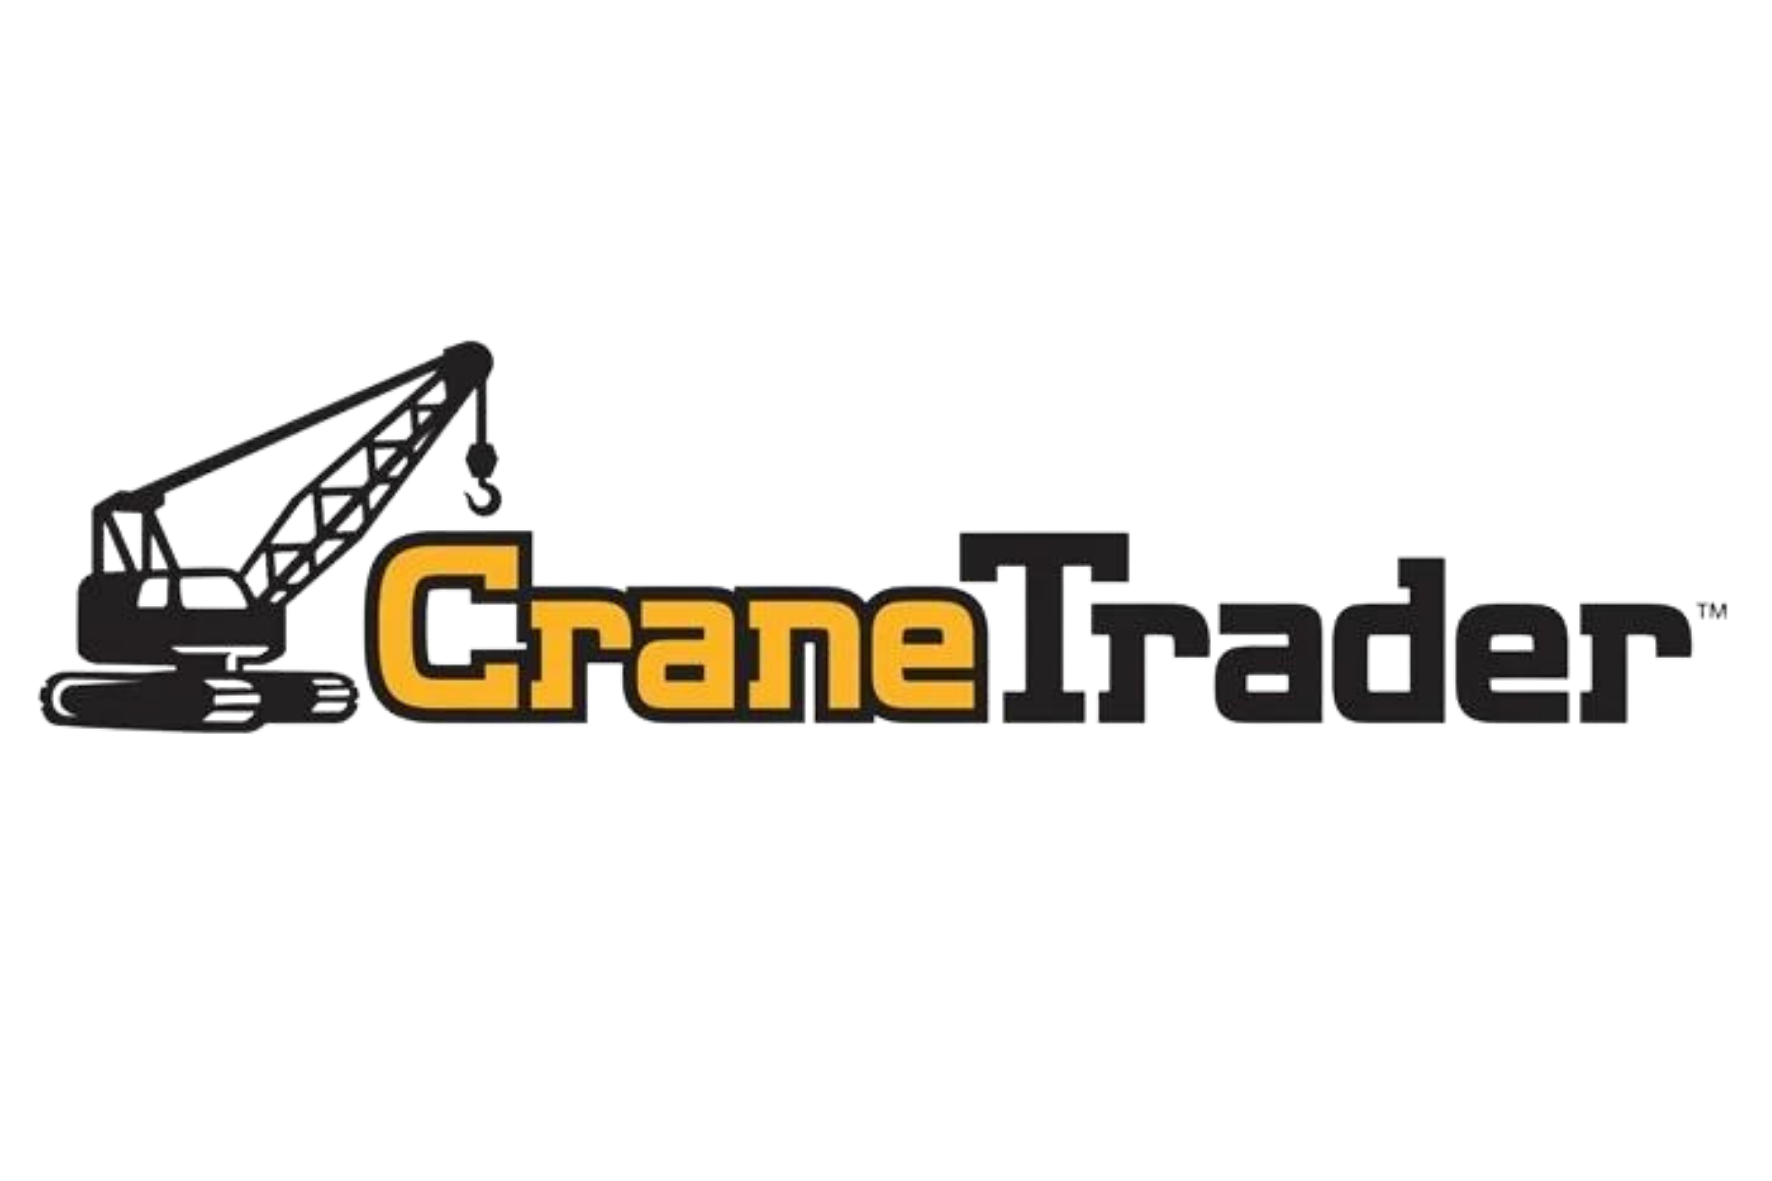 Sandhills/Crane Trader